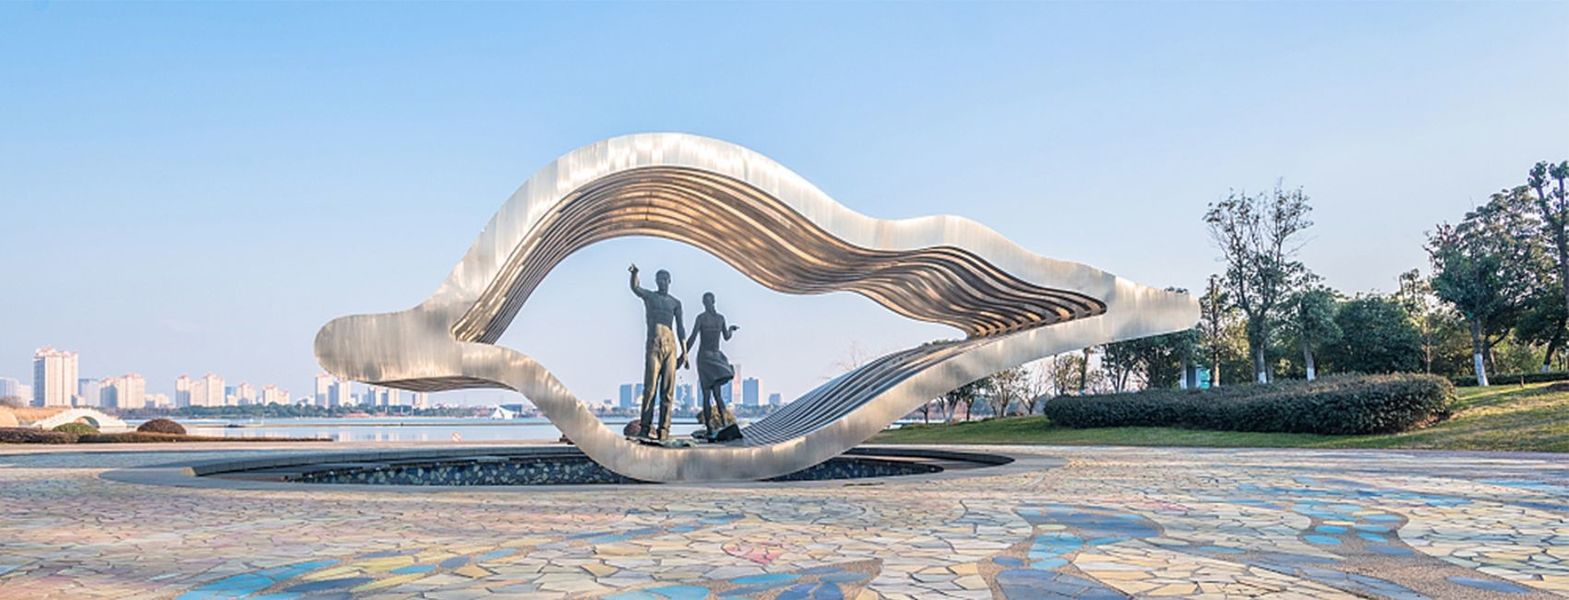 چین بهترین مجسمه سازی هنر مس برای فروش